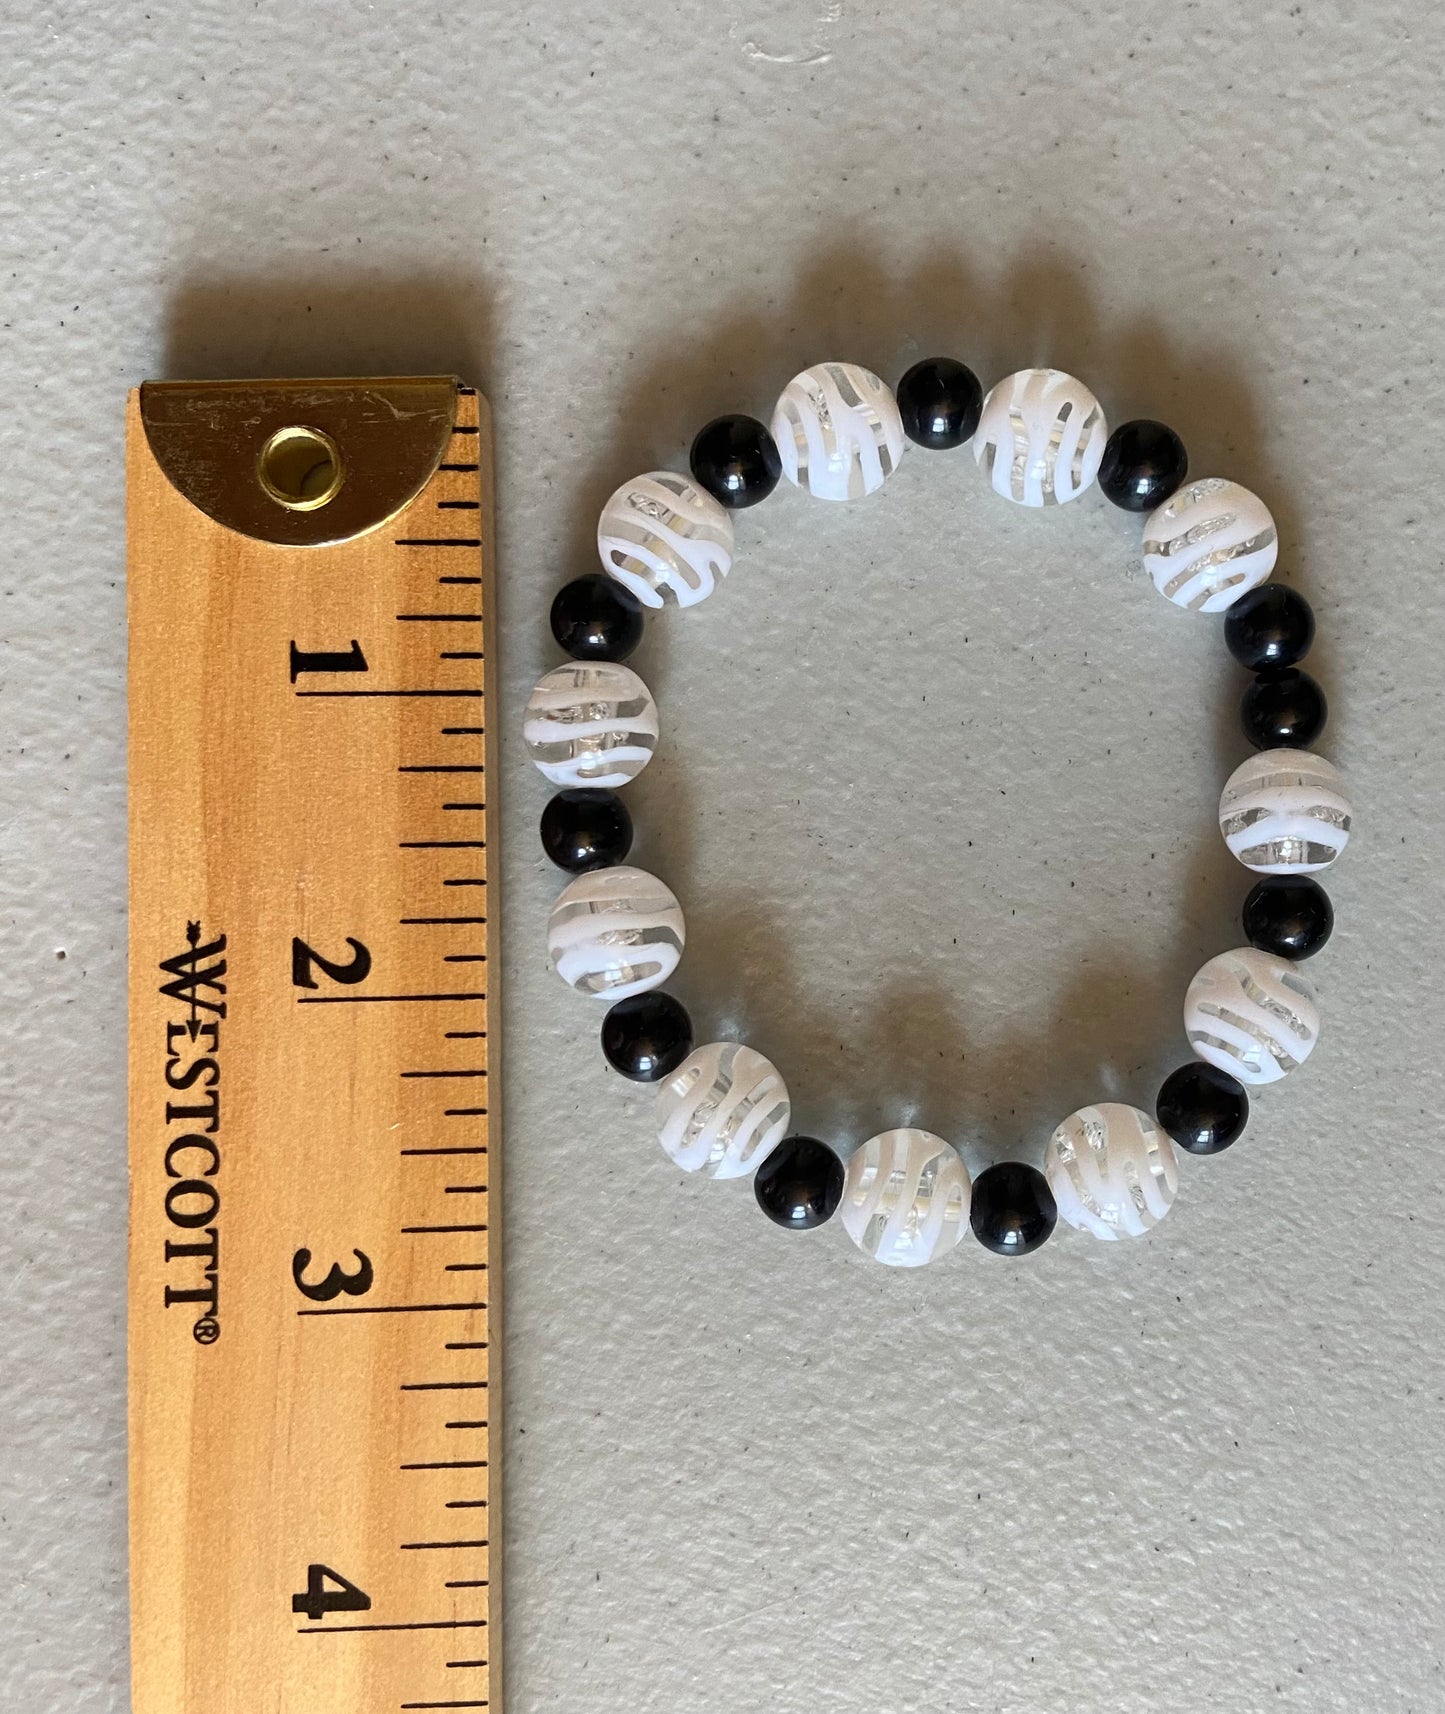 Black & Clear /White beads Bracelet